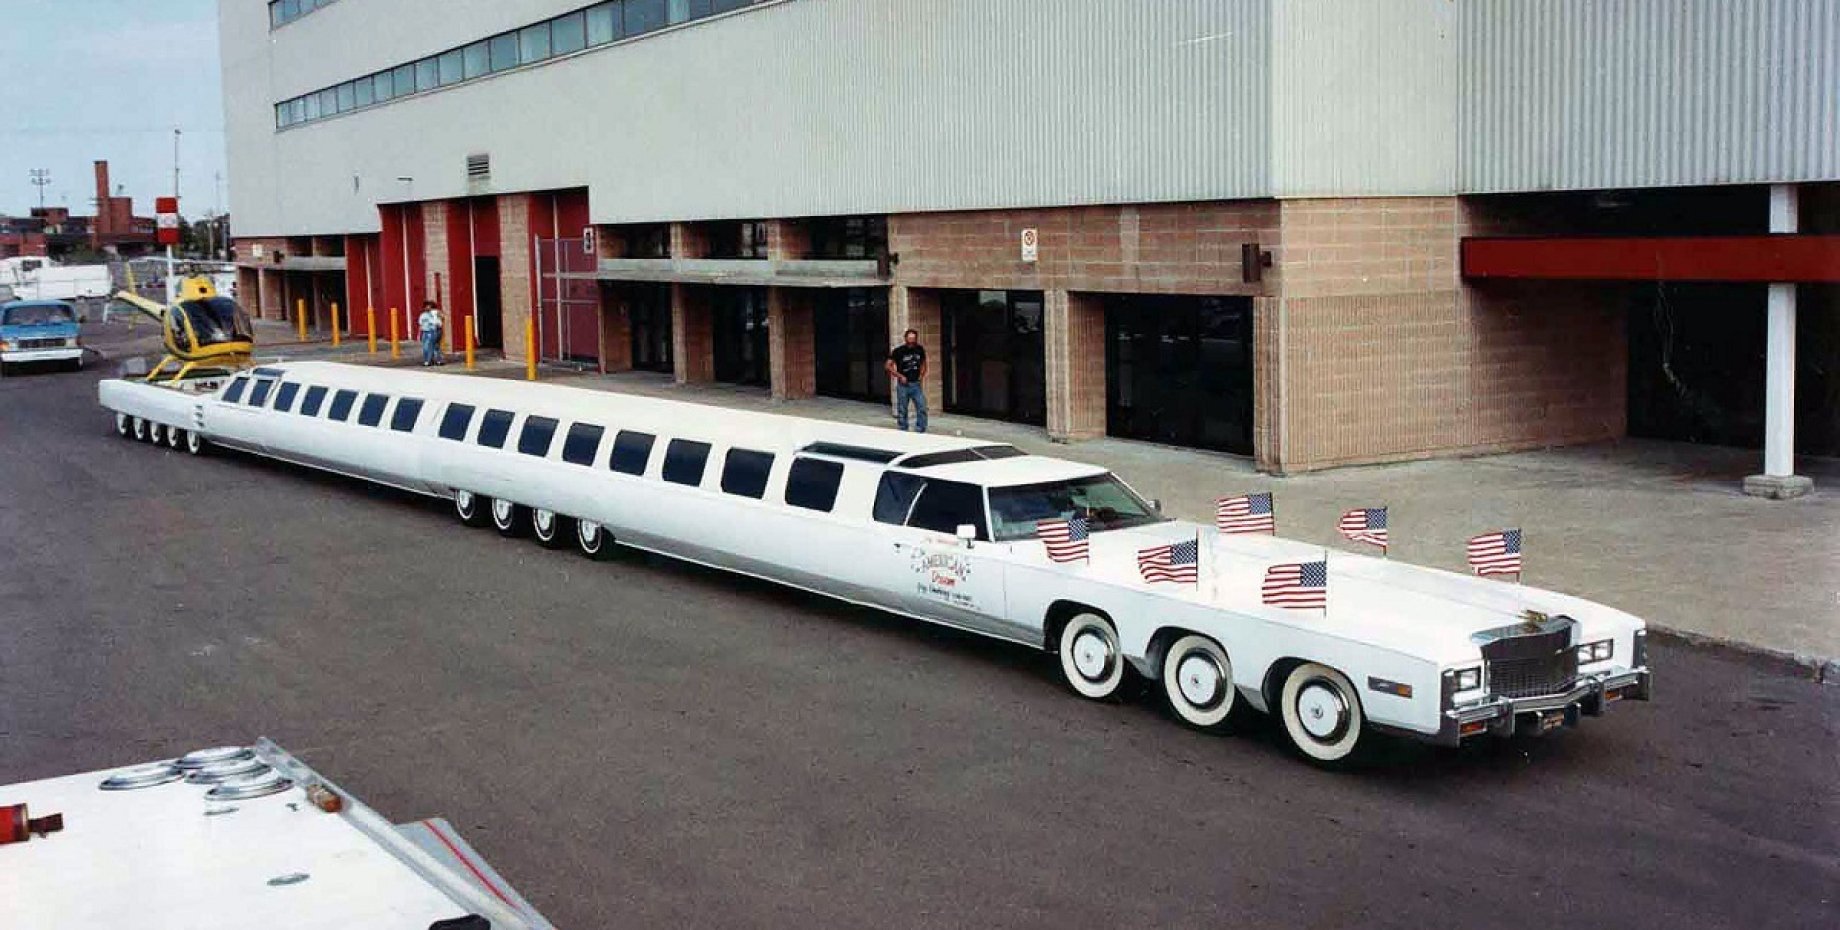 Лимузин The American Dream, The American Dream, самый длинный авто в мире, Cadillac Eldorado, лимузин Cadillac